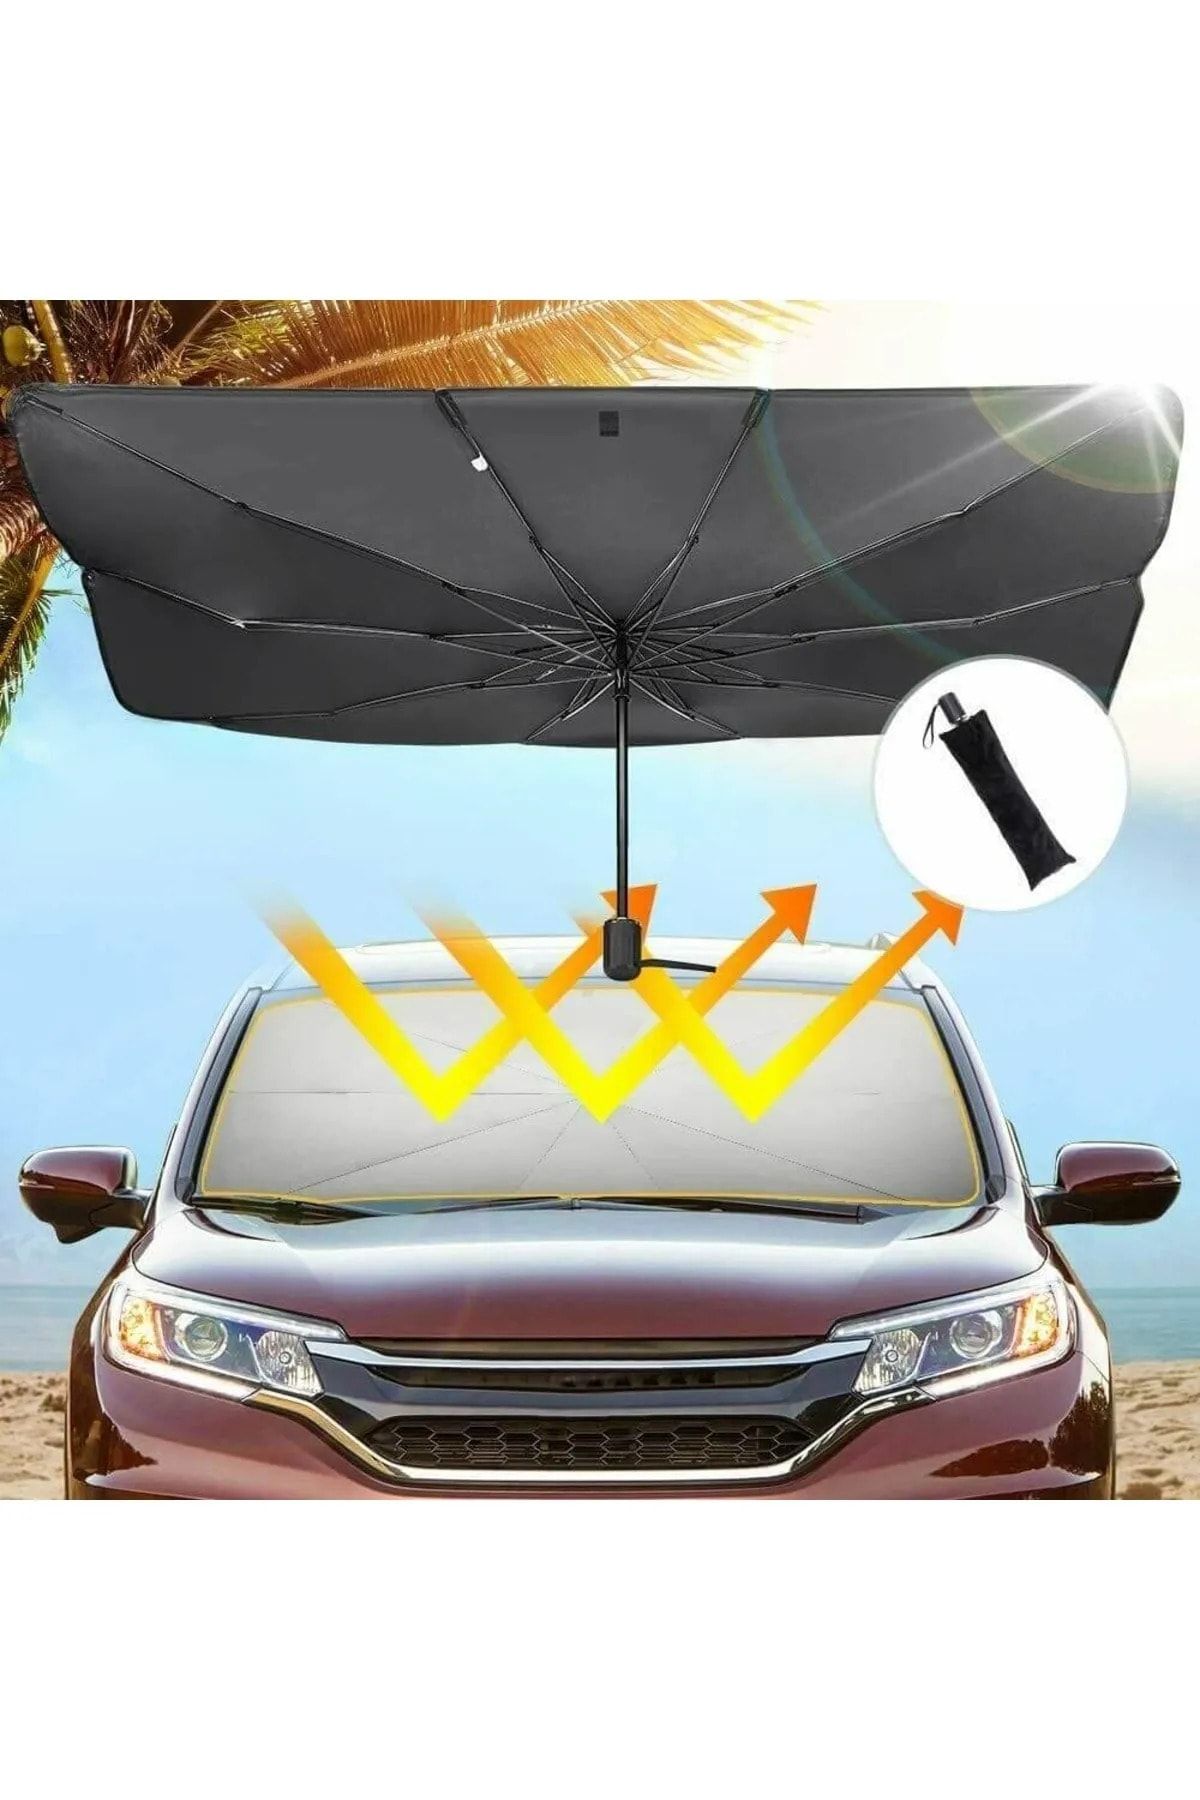 Universal Chery Kimo Araba Ön Cam Güneşlik Katlanabilir Güneşlik Şemsiye Ön Cam Gölgelik